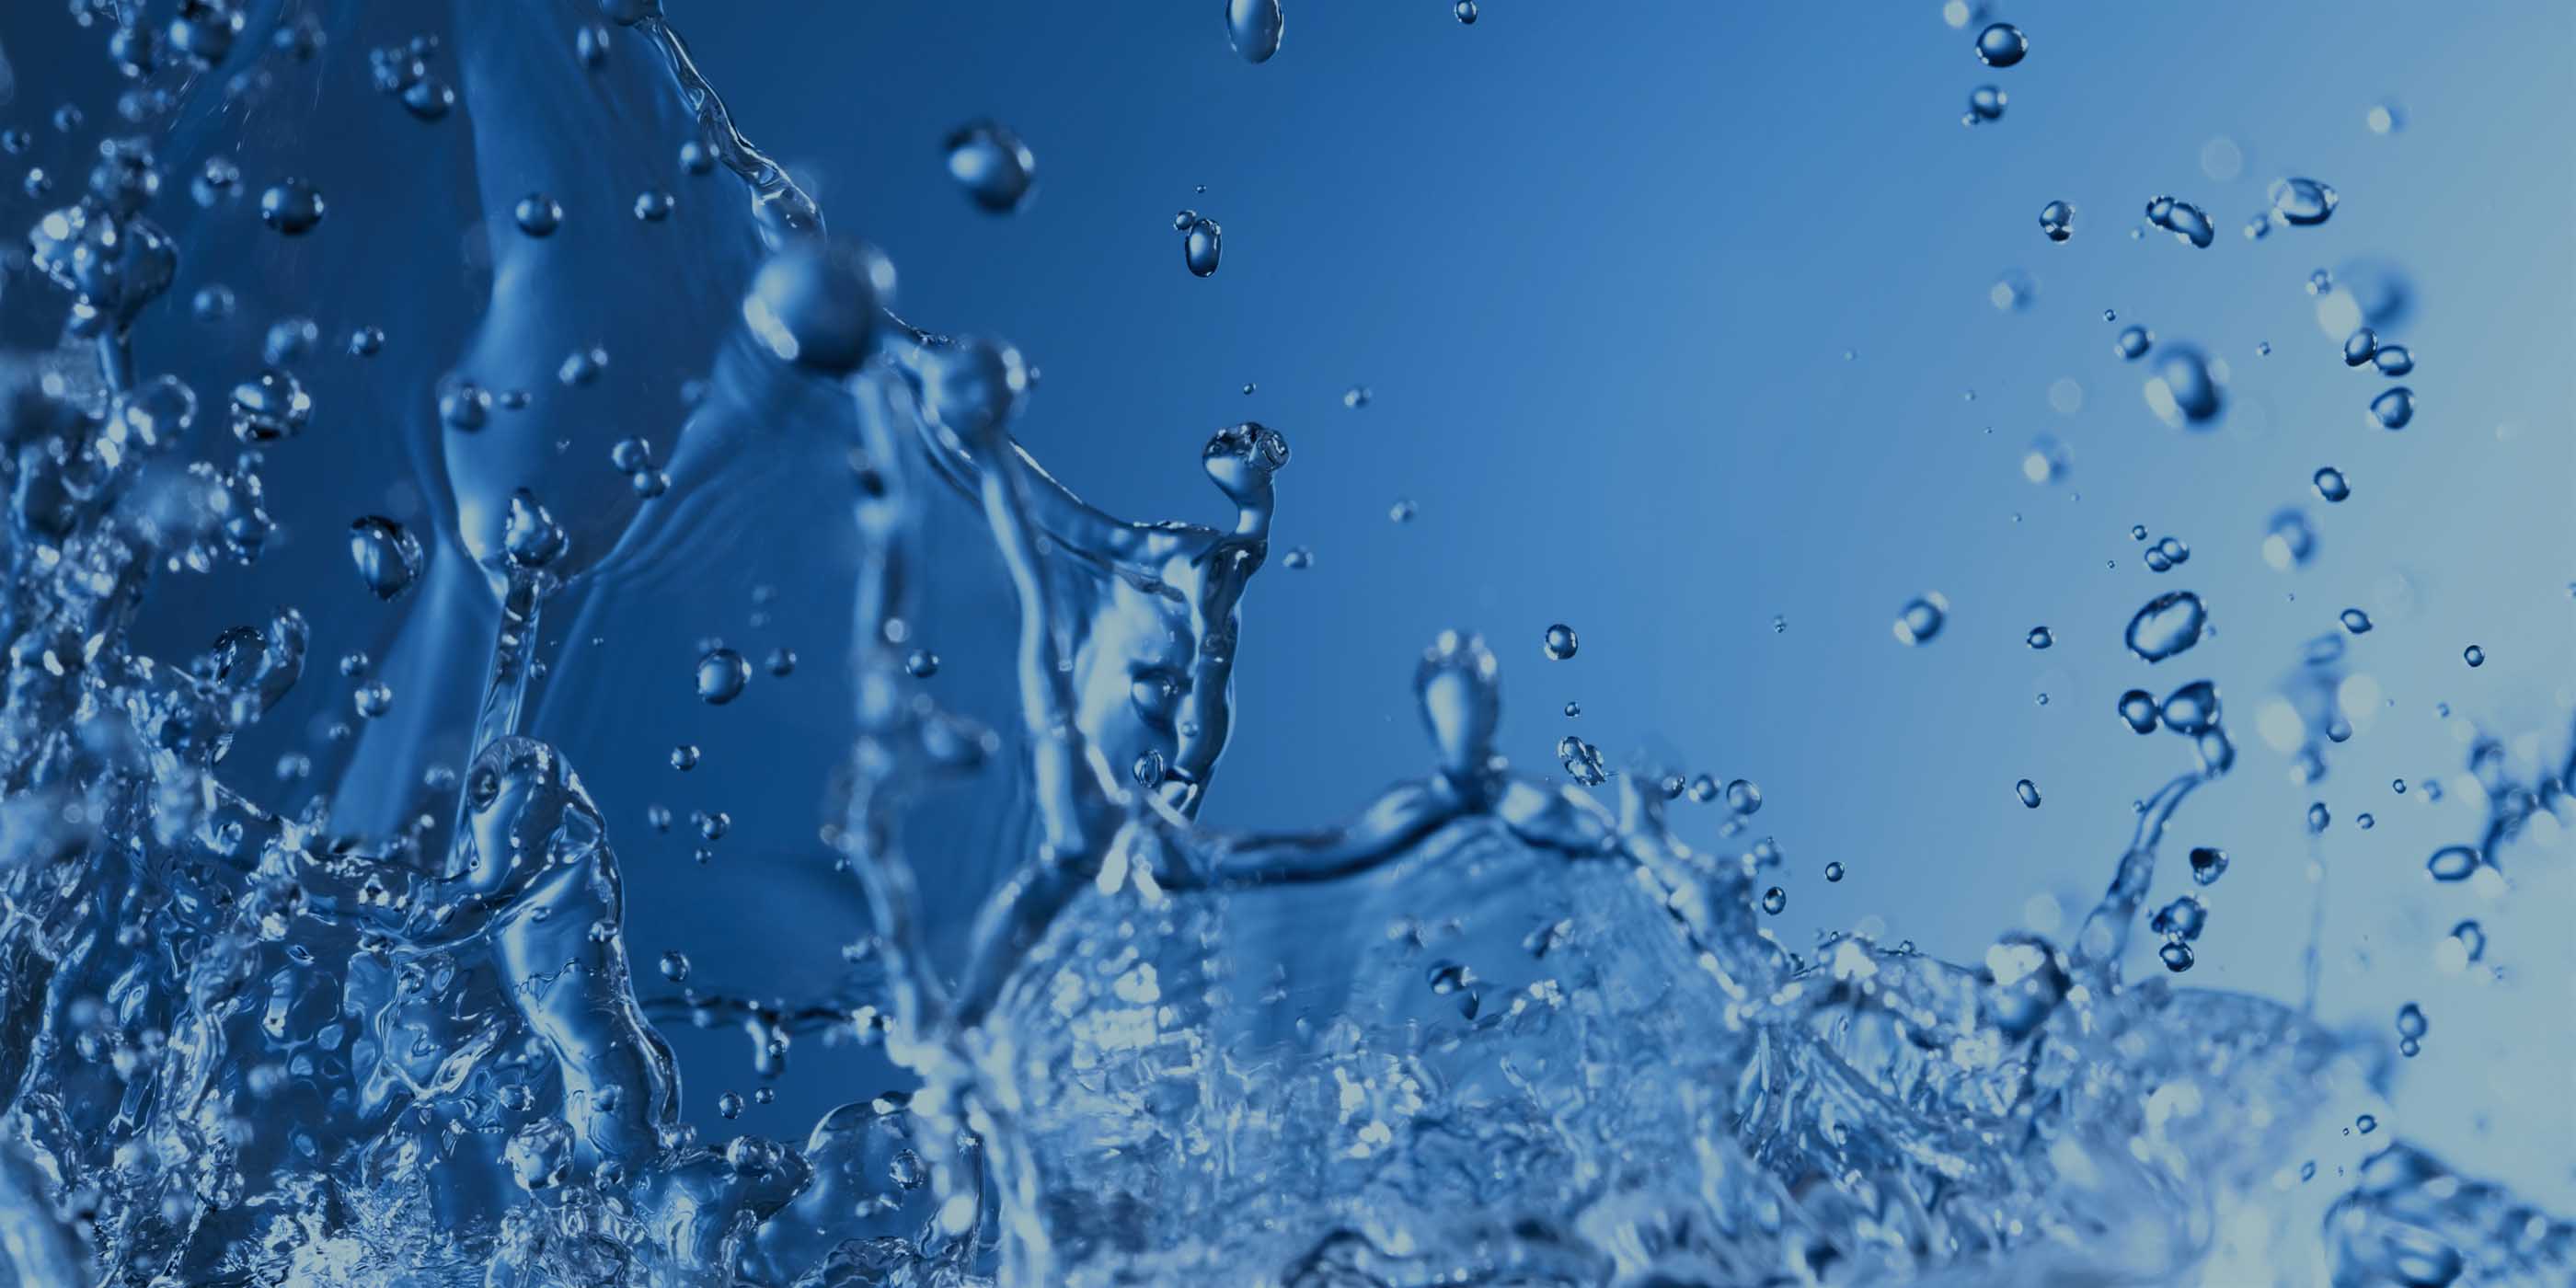 Acqua virtuale: che cos'è e quanta ne consumiamo?